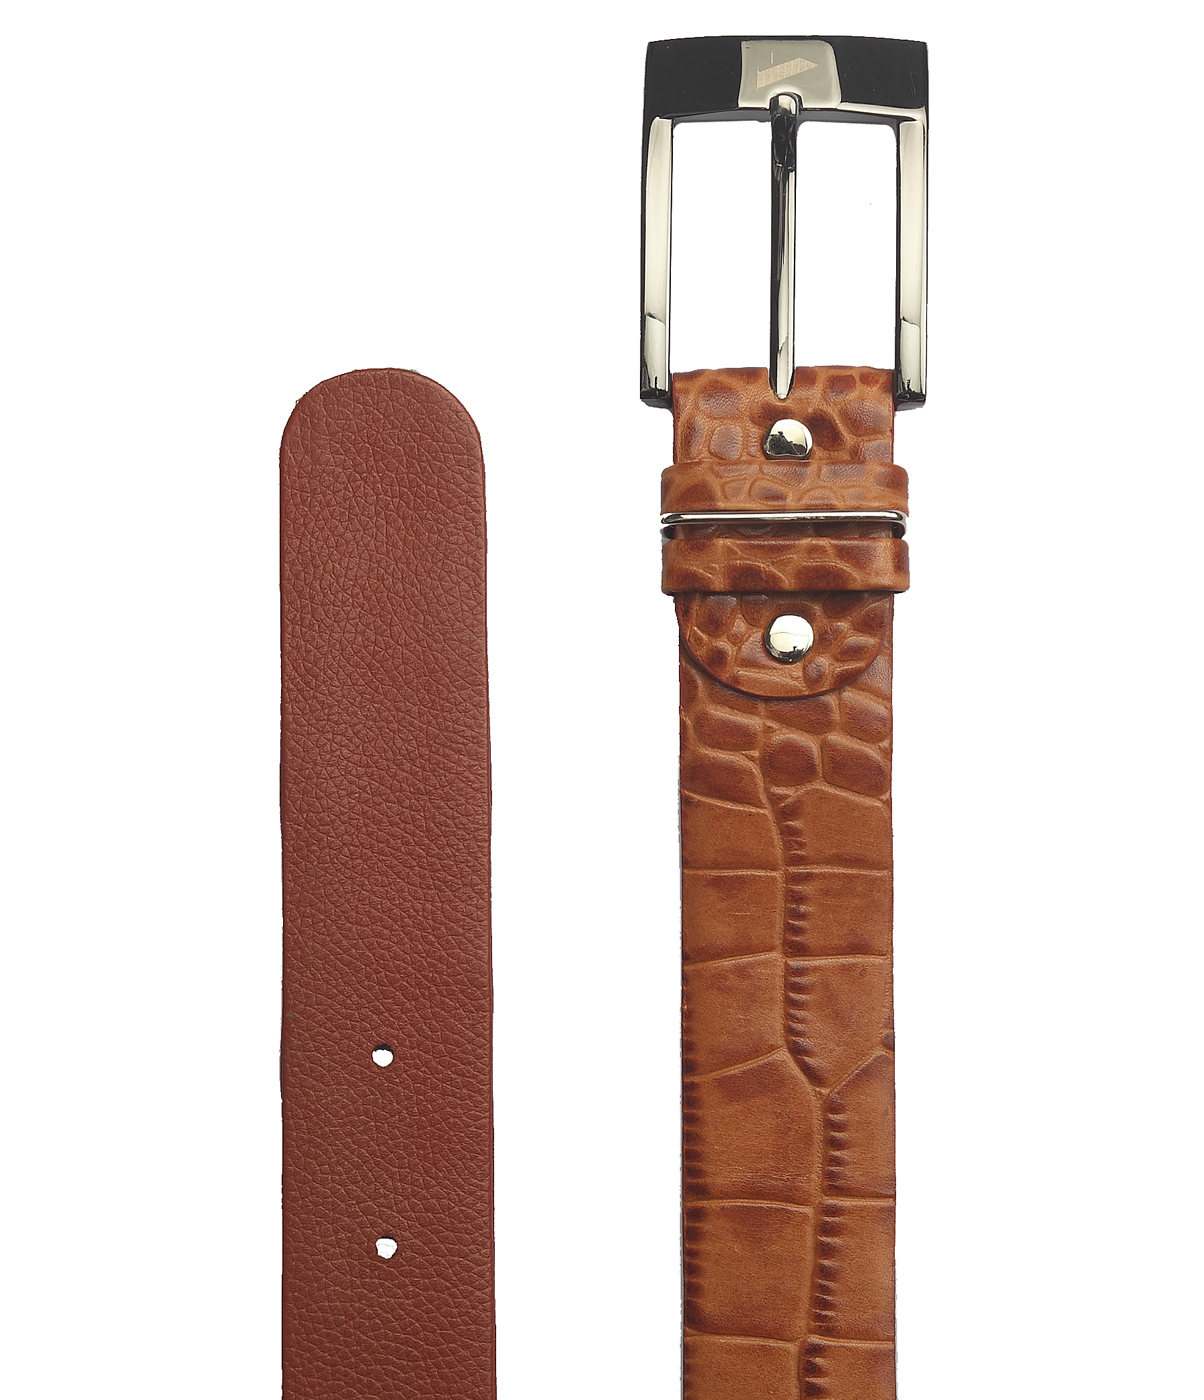 BL121--Men's Formal wear belt in Genuine Leather - Tan